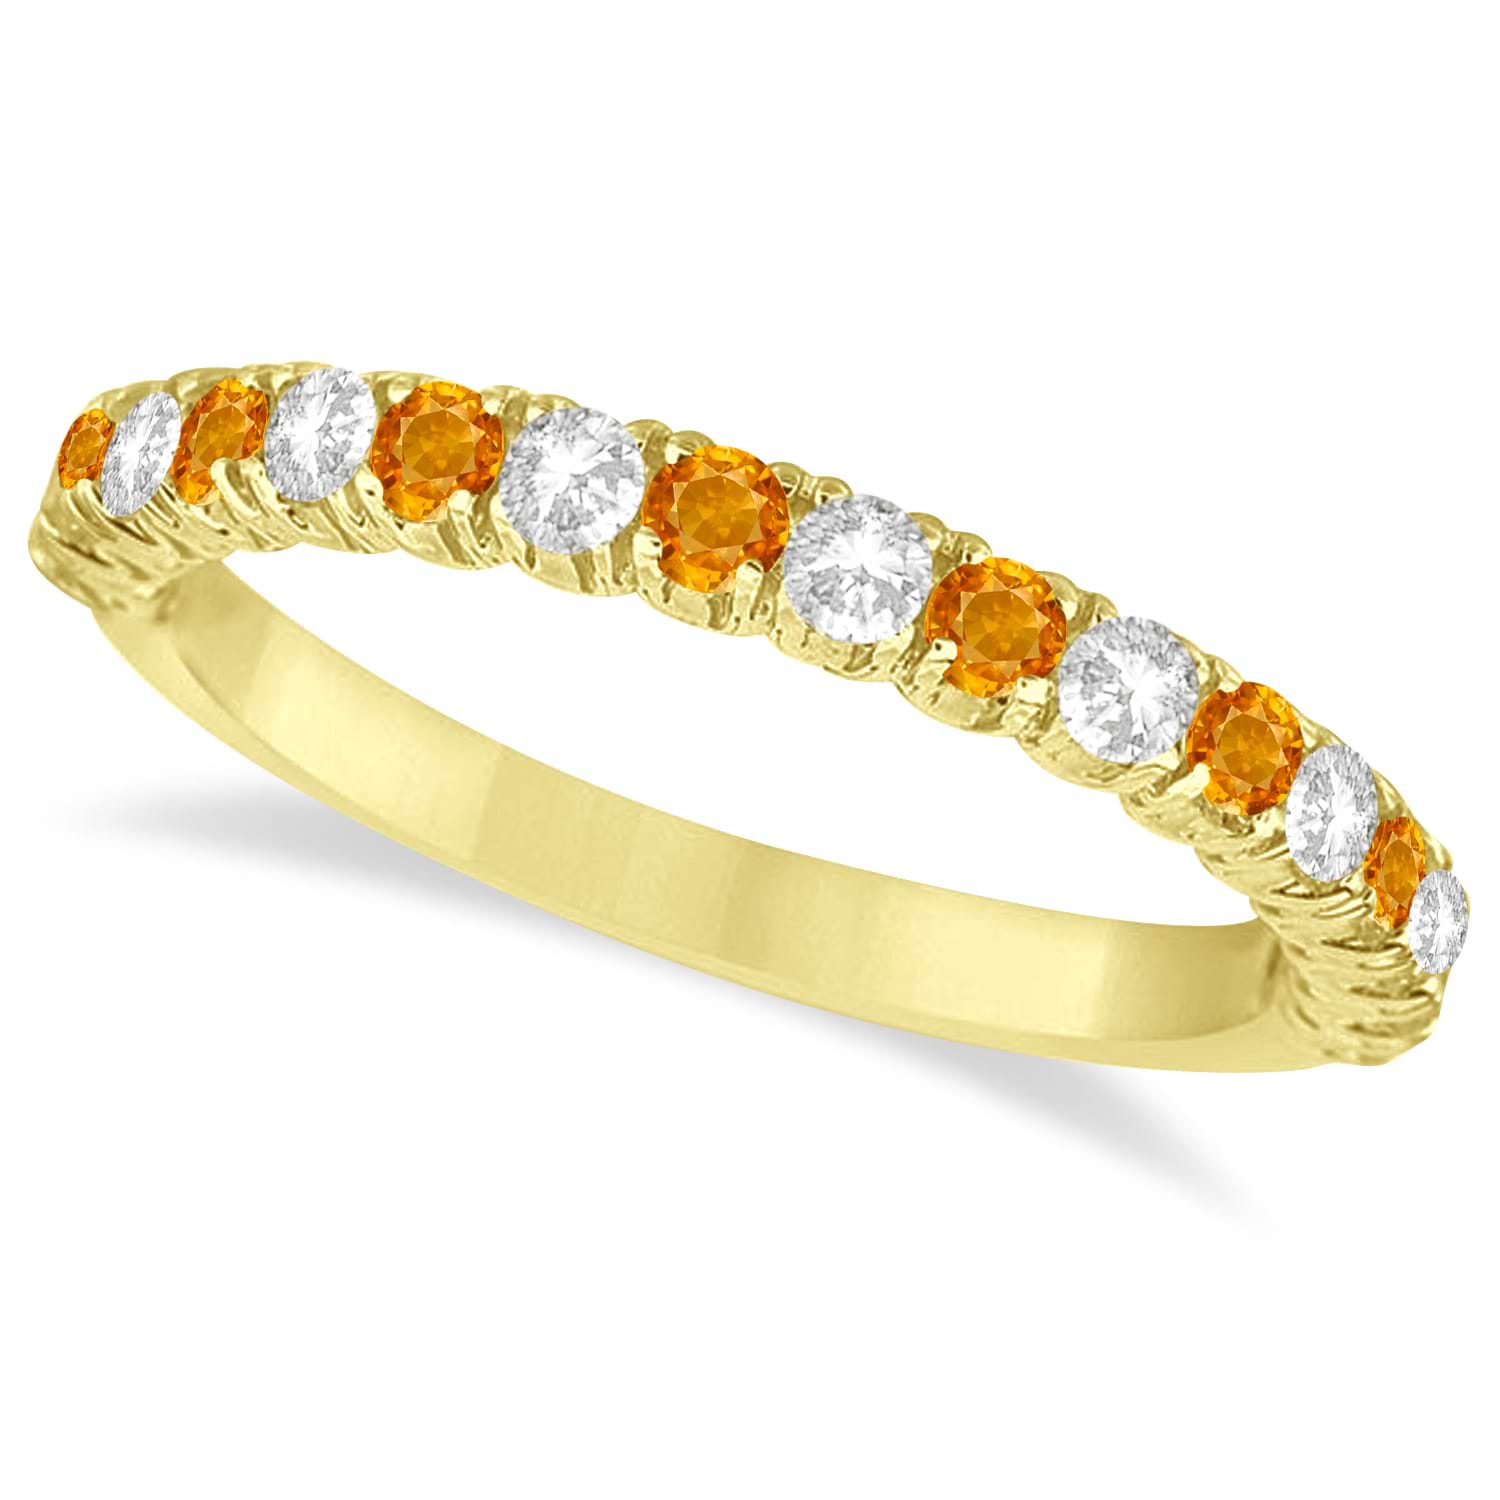 Citrine & Diamond Wedding Band Anniversary Ring in 14k Yellow Gold (0.75ct)